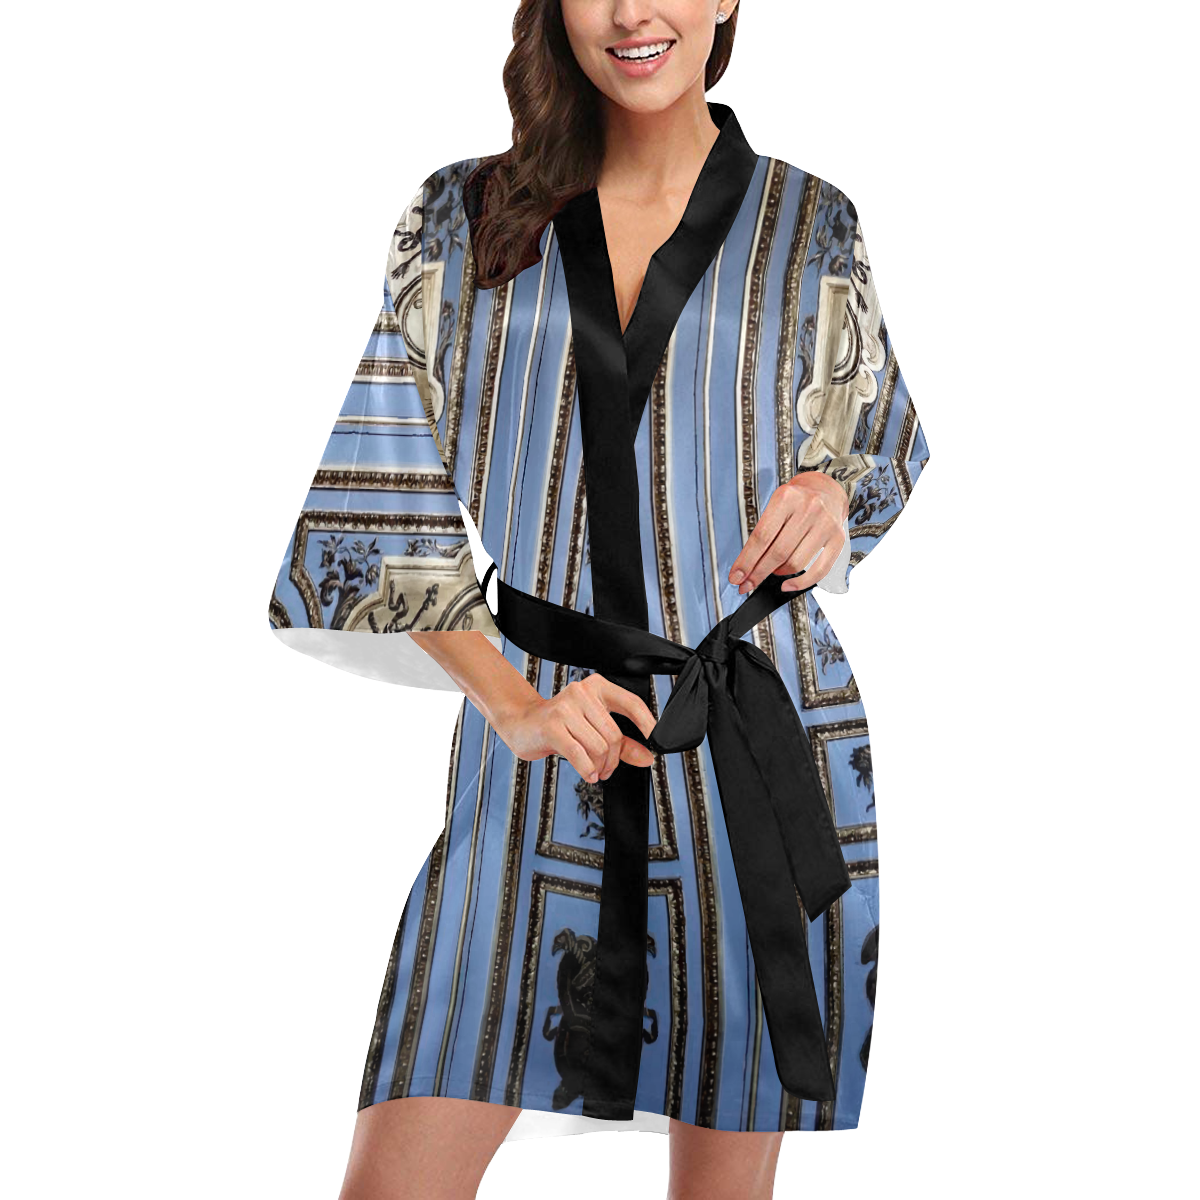 Robe | dusen dusen bathrobe barefoot robe ugg robes on sale